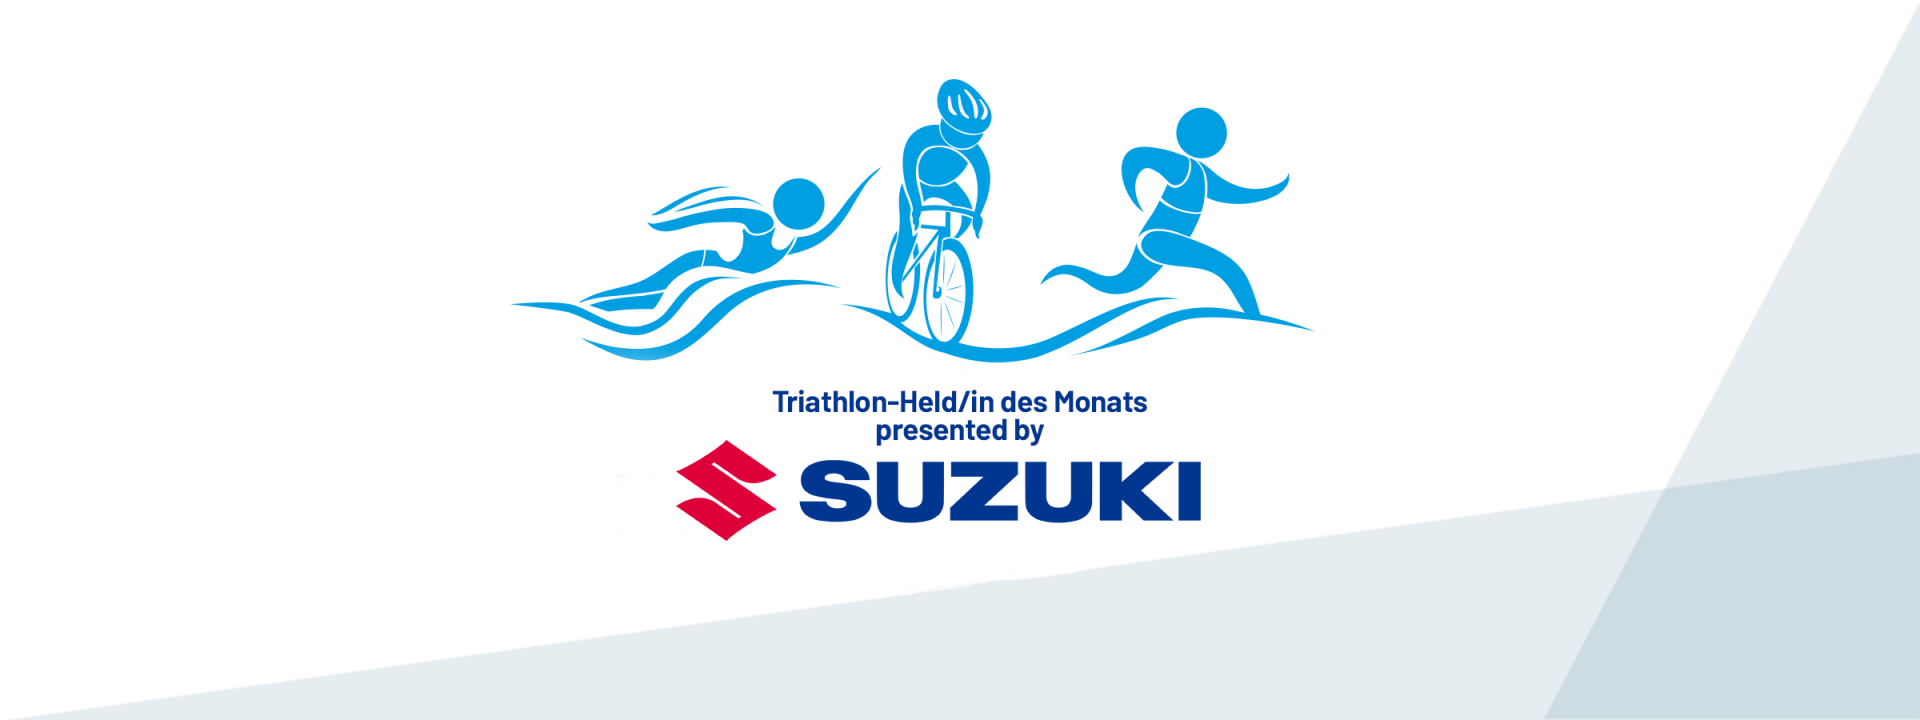 Triathlon-Held presented by SUZUKI